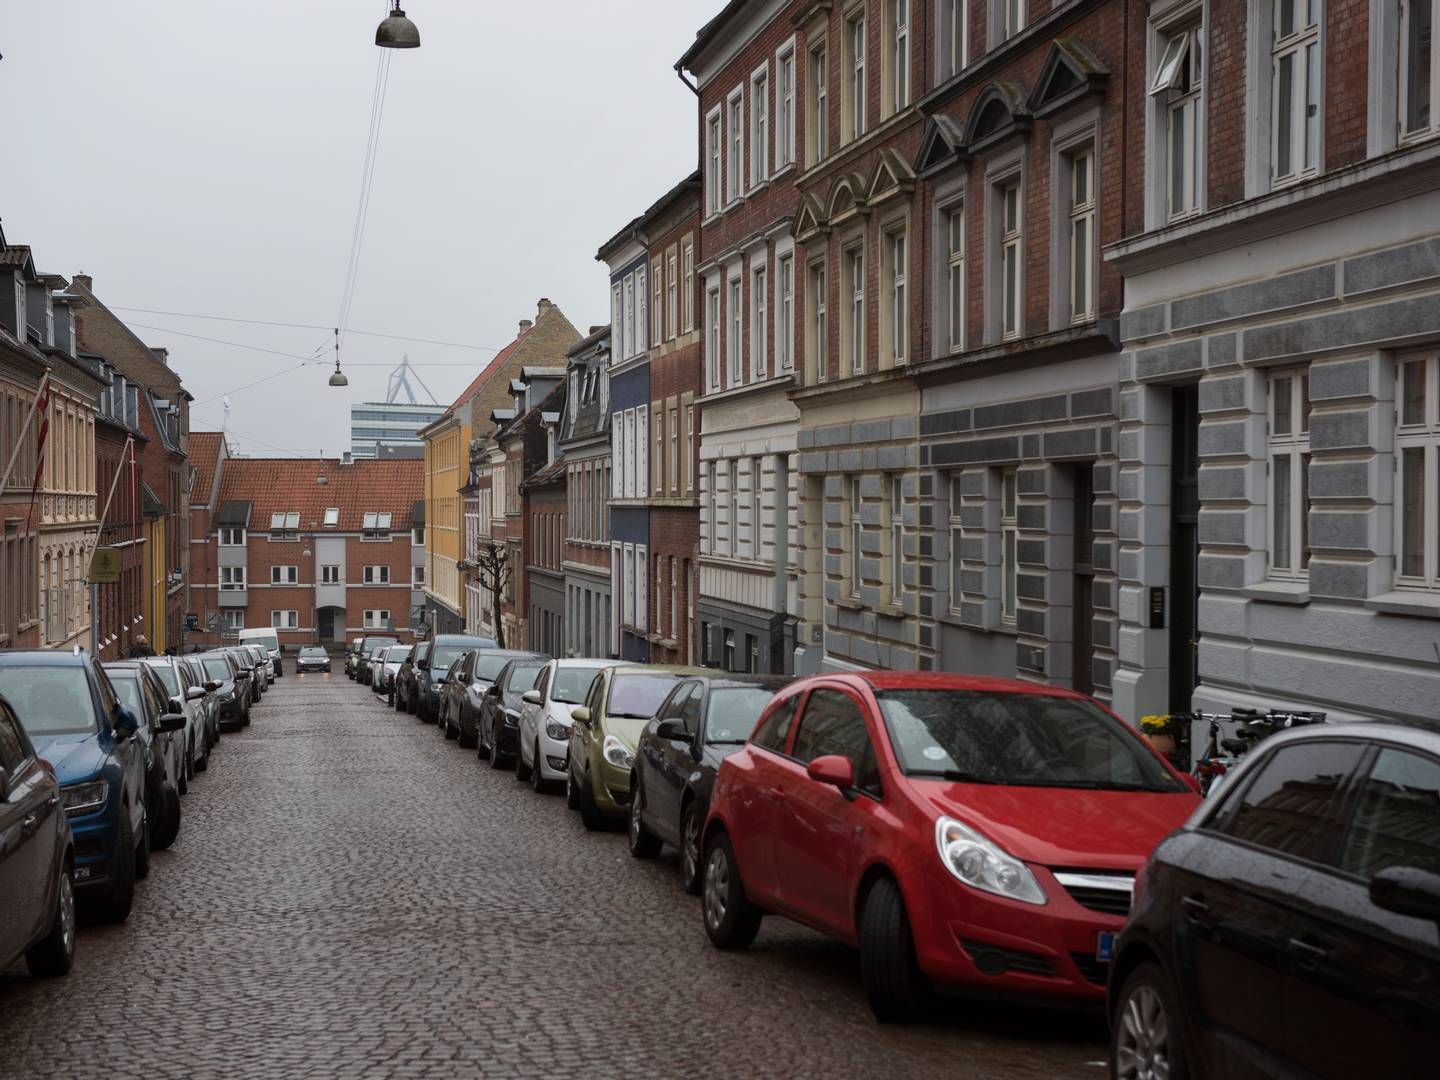 Dyrere parkering kan hjælpe på både klimaet og trængsel i byerne. | Foto: Laura Bisgaard Krogh/Ritzau Scanpix